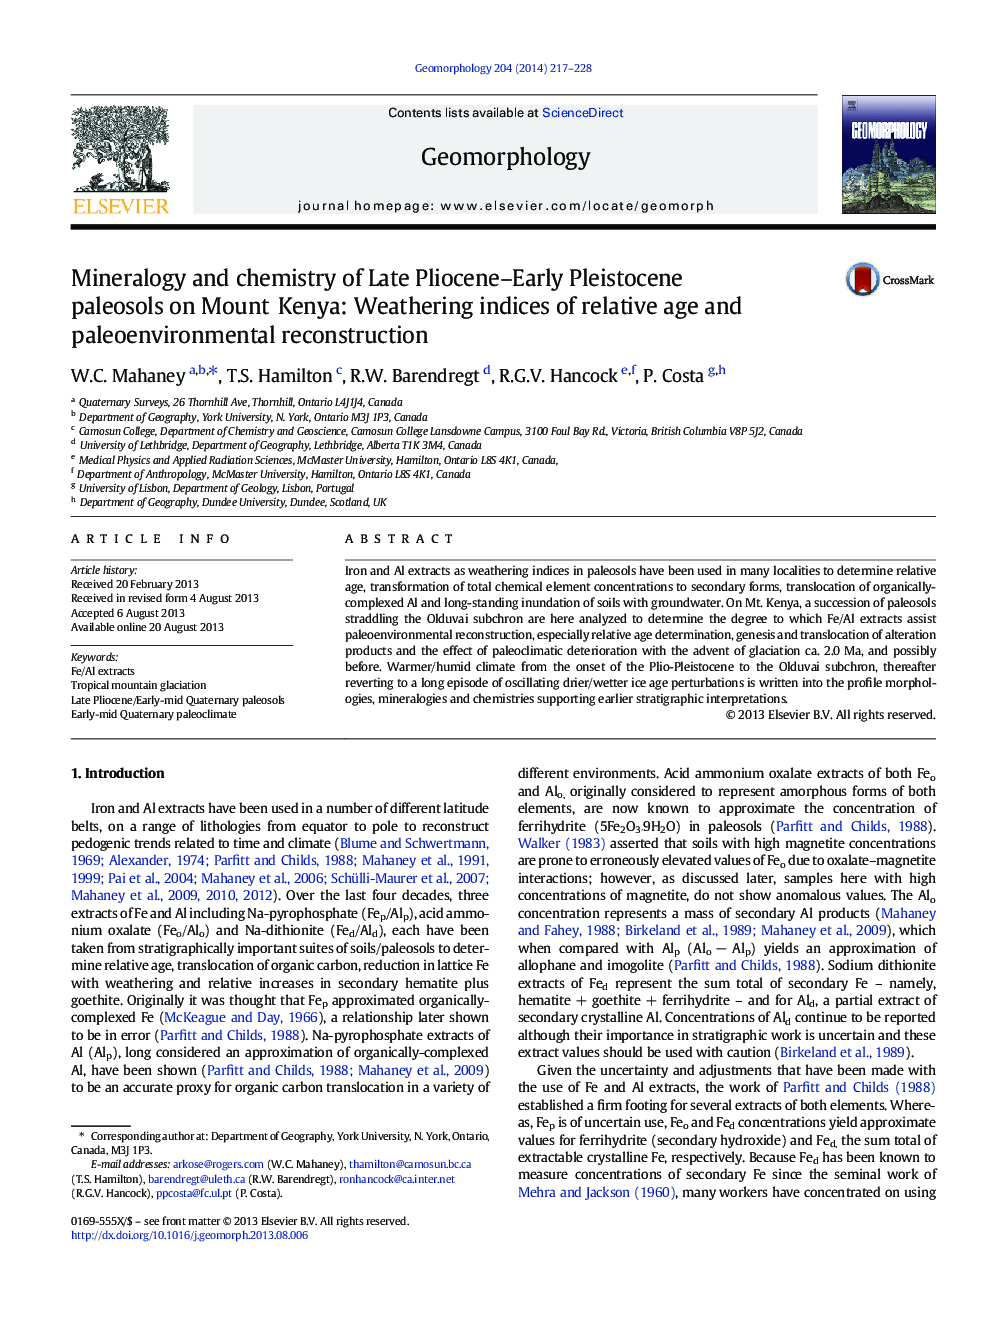 کانی شناسی و شیمی در اواخر پیلوسن آکادمی پالئوسول های اولیه پلیستوکن در کوه کنیا: شاخص های آب و هوای نسبی و بازسازی محیط زیست 